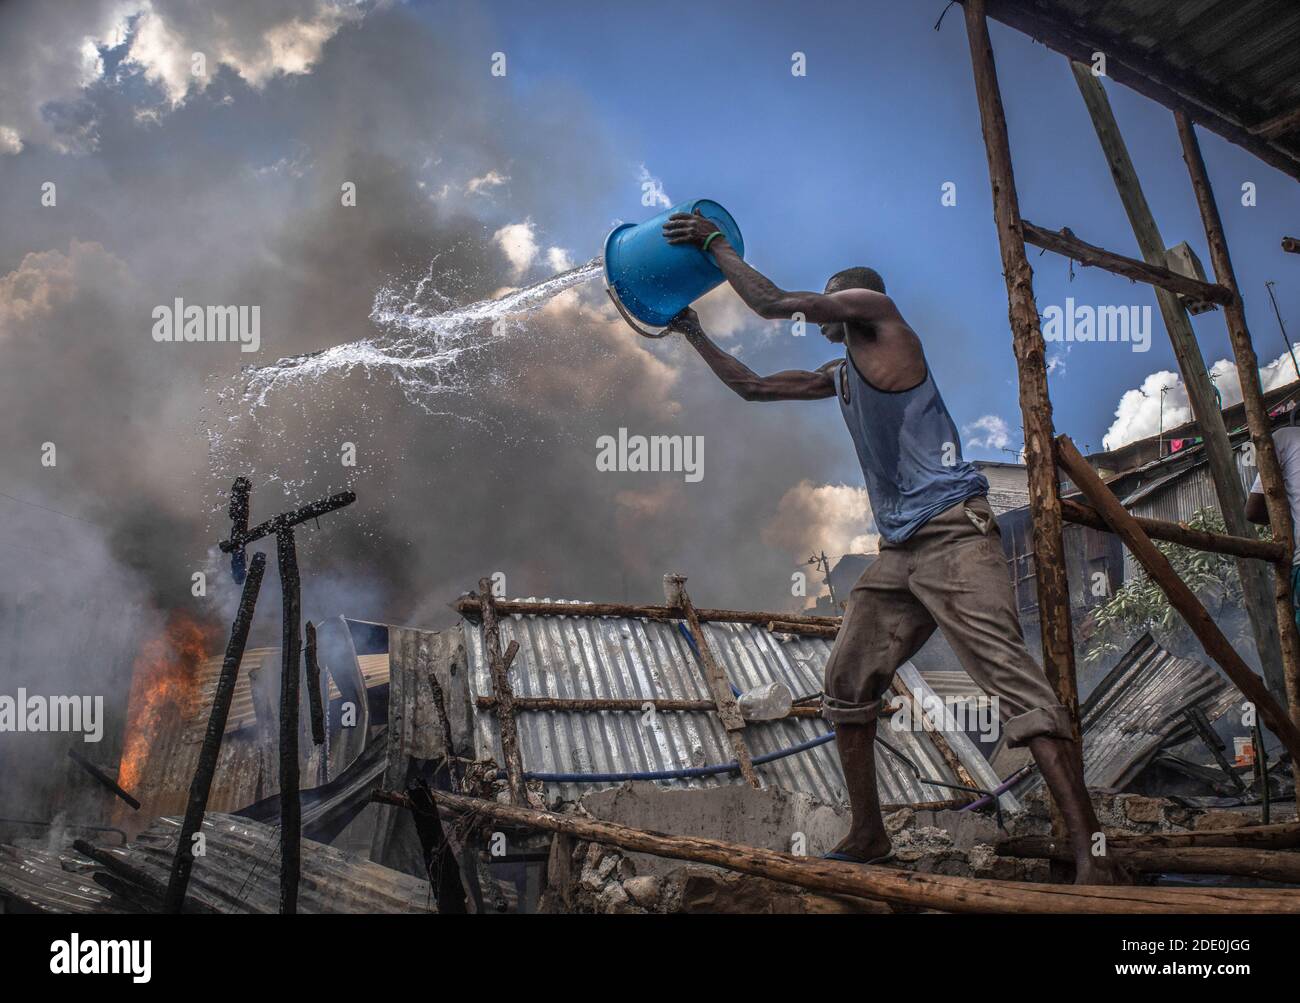 24. Januar 2019, Nairobi, Kenia: Bewohner des Kibera Soweto-Gebiets kämpfen mit ihren Wassereimern um die Ausbreitung des Feuers. Tief im Nachbarland des Soweto-Gebiets in den Slums von Kibera, Die Bewohner erlebten einen harten verrückten Moment, nachdem eine Feuerbelagerung durch einen illegalen Stromanschluss dreißig Häuser niederschürte und die meisten Bewohner obdachlos wurden. Die meisten Einheimischen schlossen sich den Händen an, um das Feuer zu löschen, aber leider konnte nichts gerettet werden, aber es gab keine Menschenleben in der Situation. (Bild: © Donwilson Odhiambo/SOPA Images via ZUMA Wire) Stockfoto